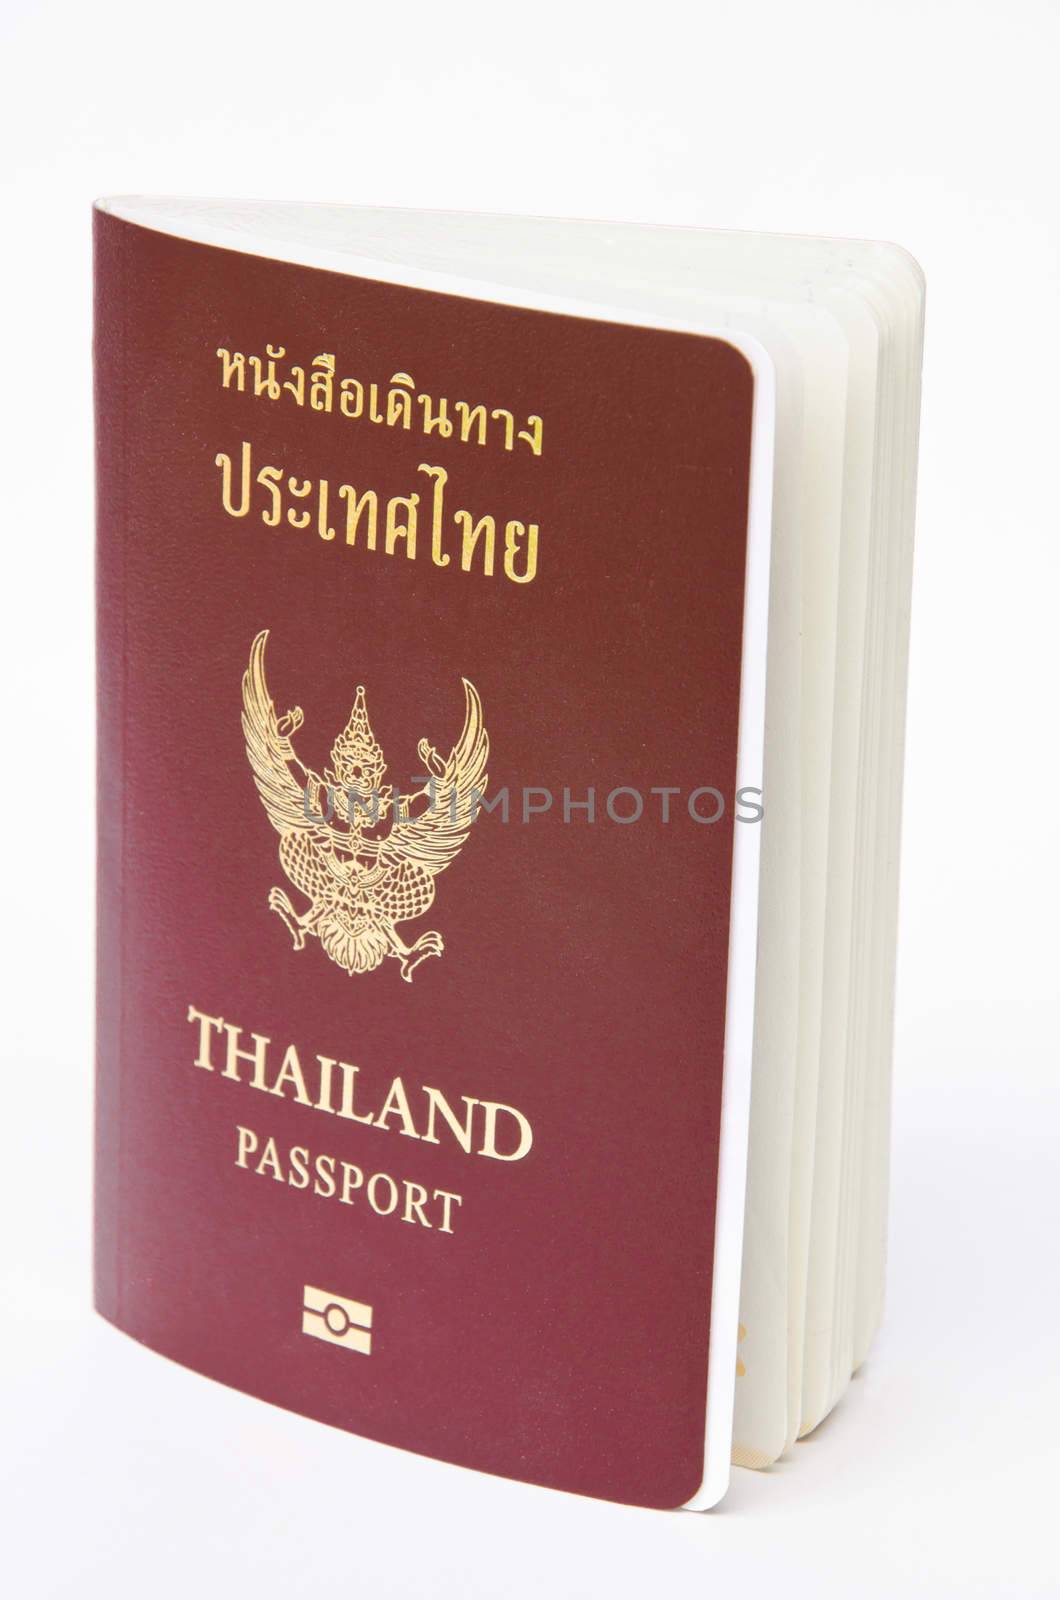 Thailand passport on white background